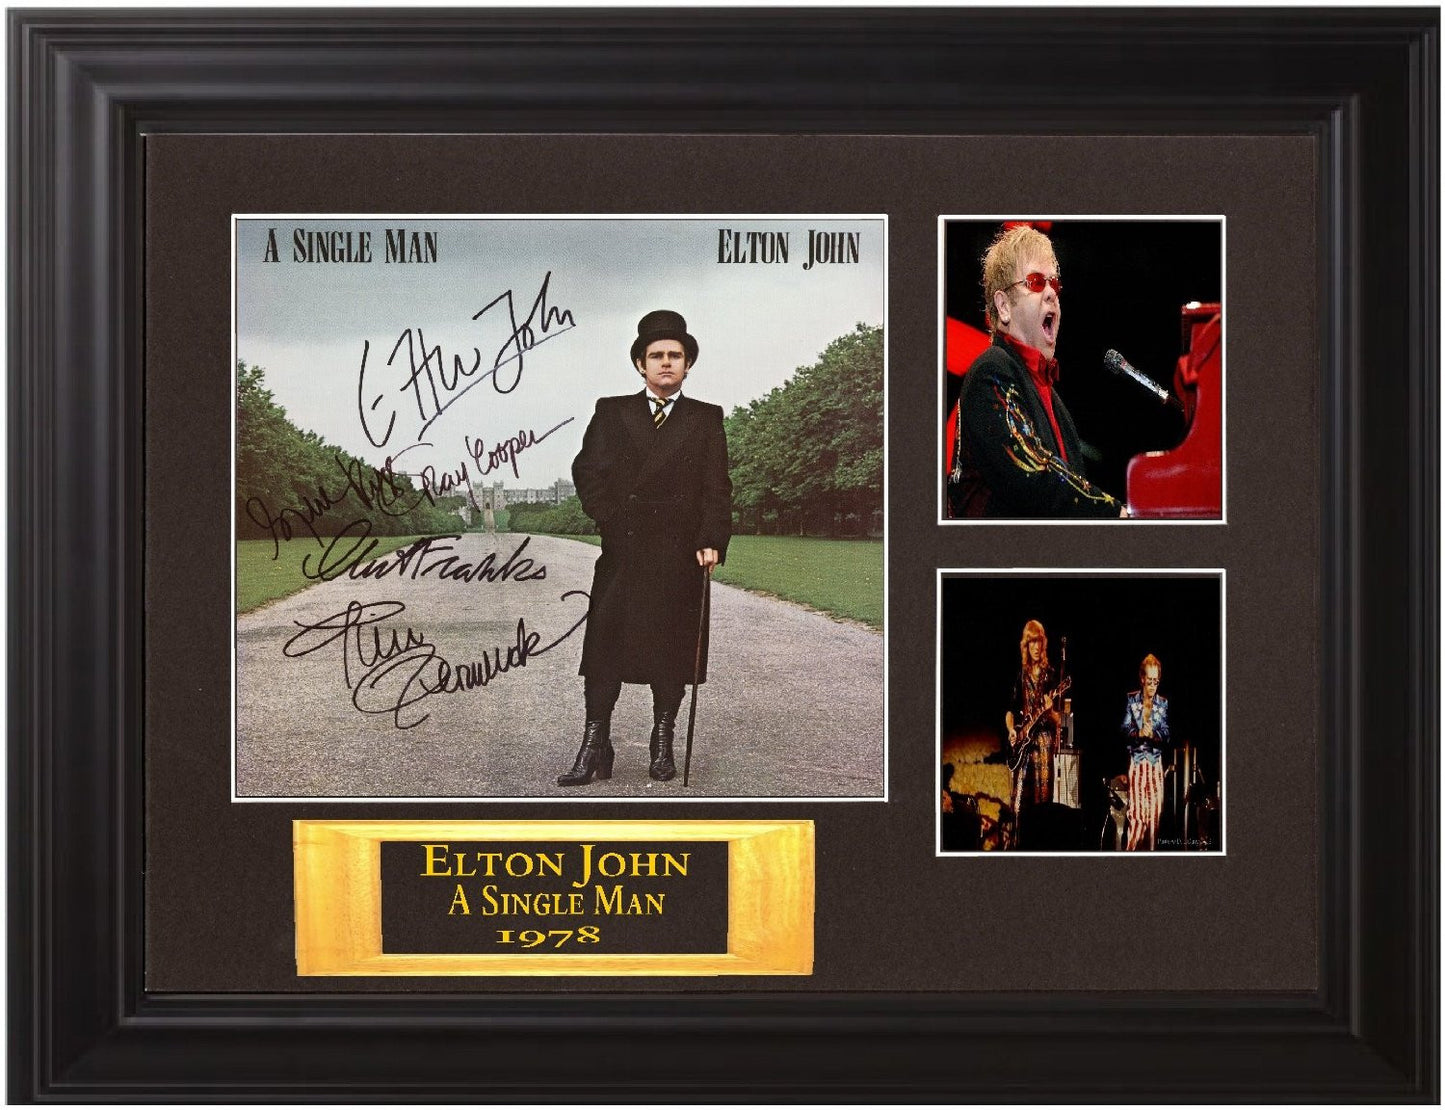 Elton John Autographed Lp "A Single Man" - Zion Graphic Collectibles